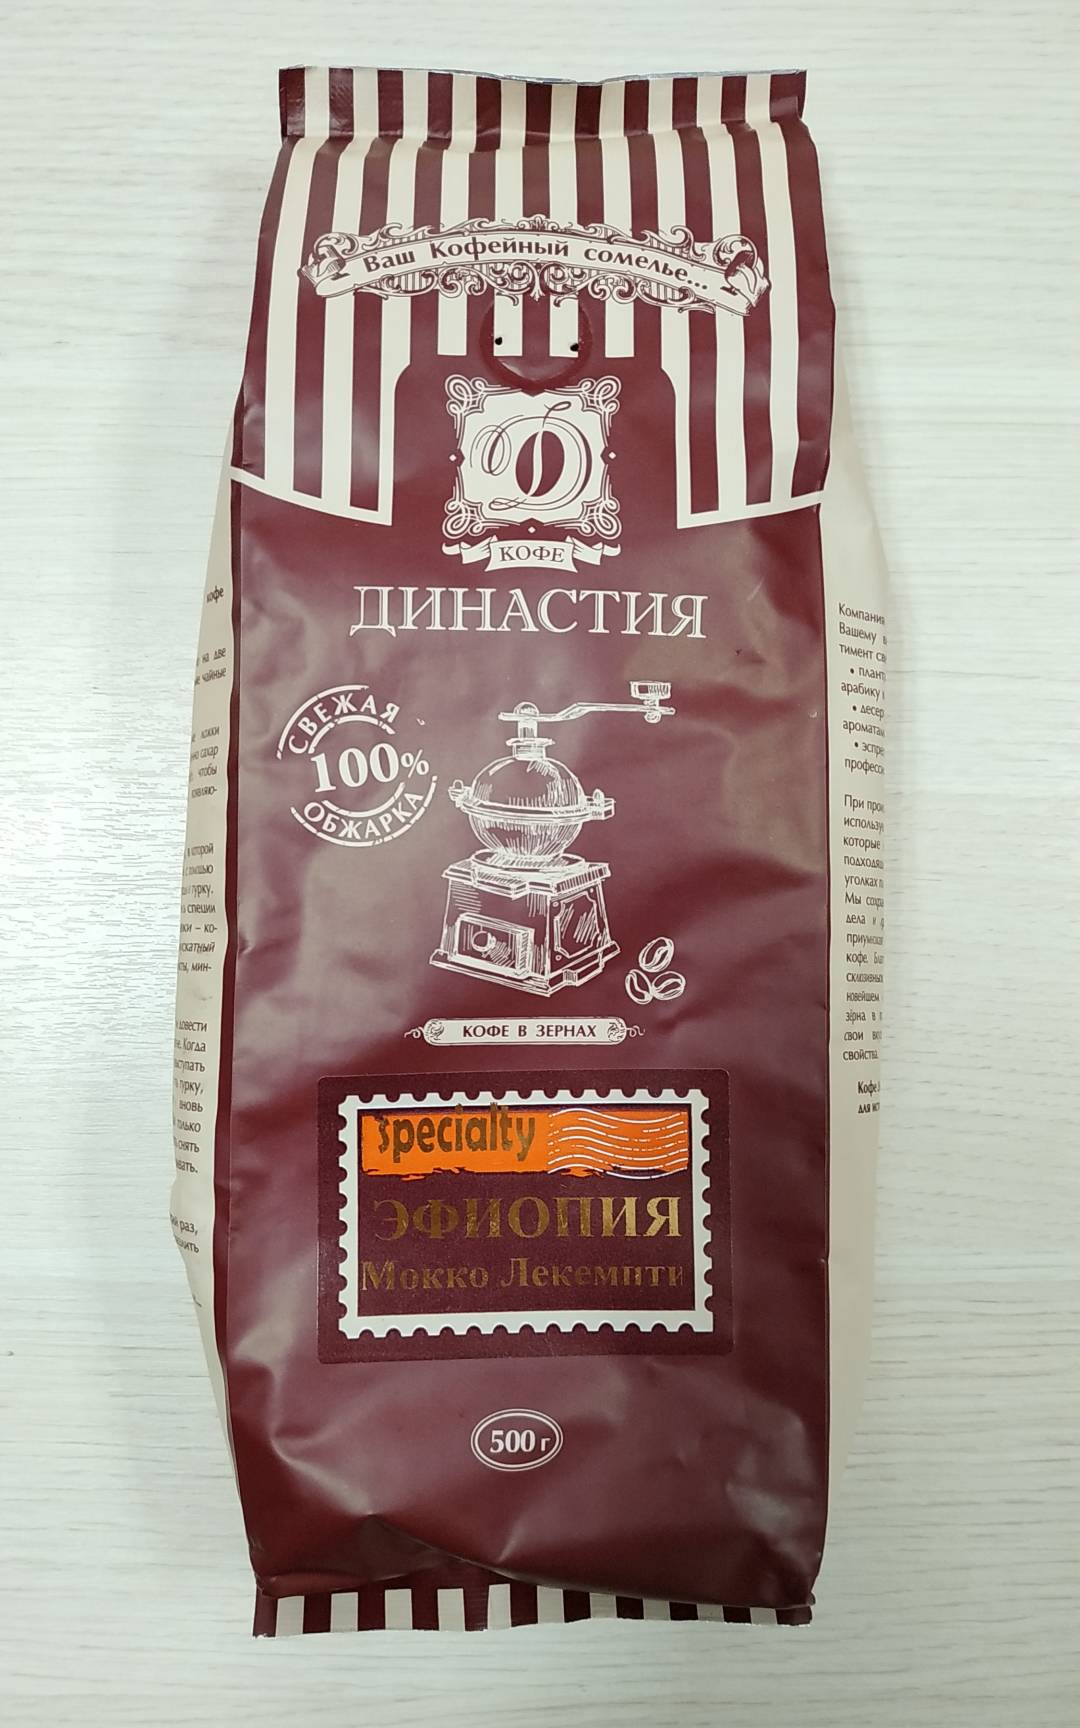 Купить онлайн Кофе Эфиопия Мокко Лекемпти в зернах в интернет-магазине Беришка с доставкой по Хабаровску и по России недорого.